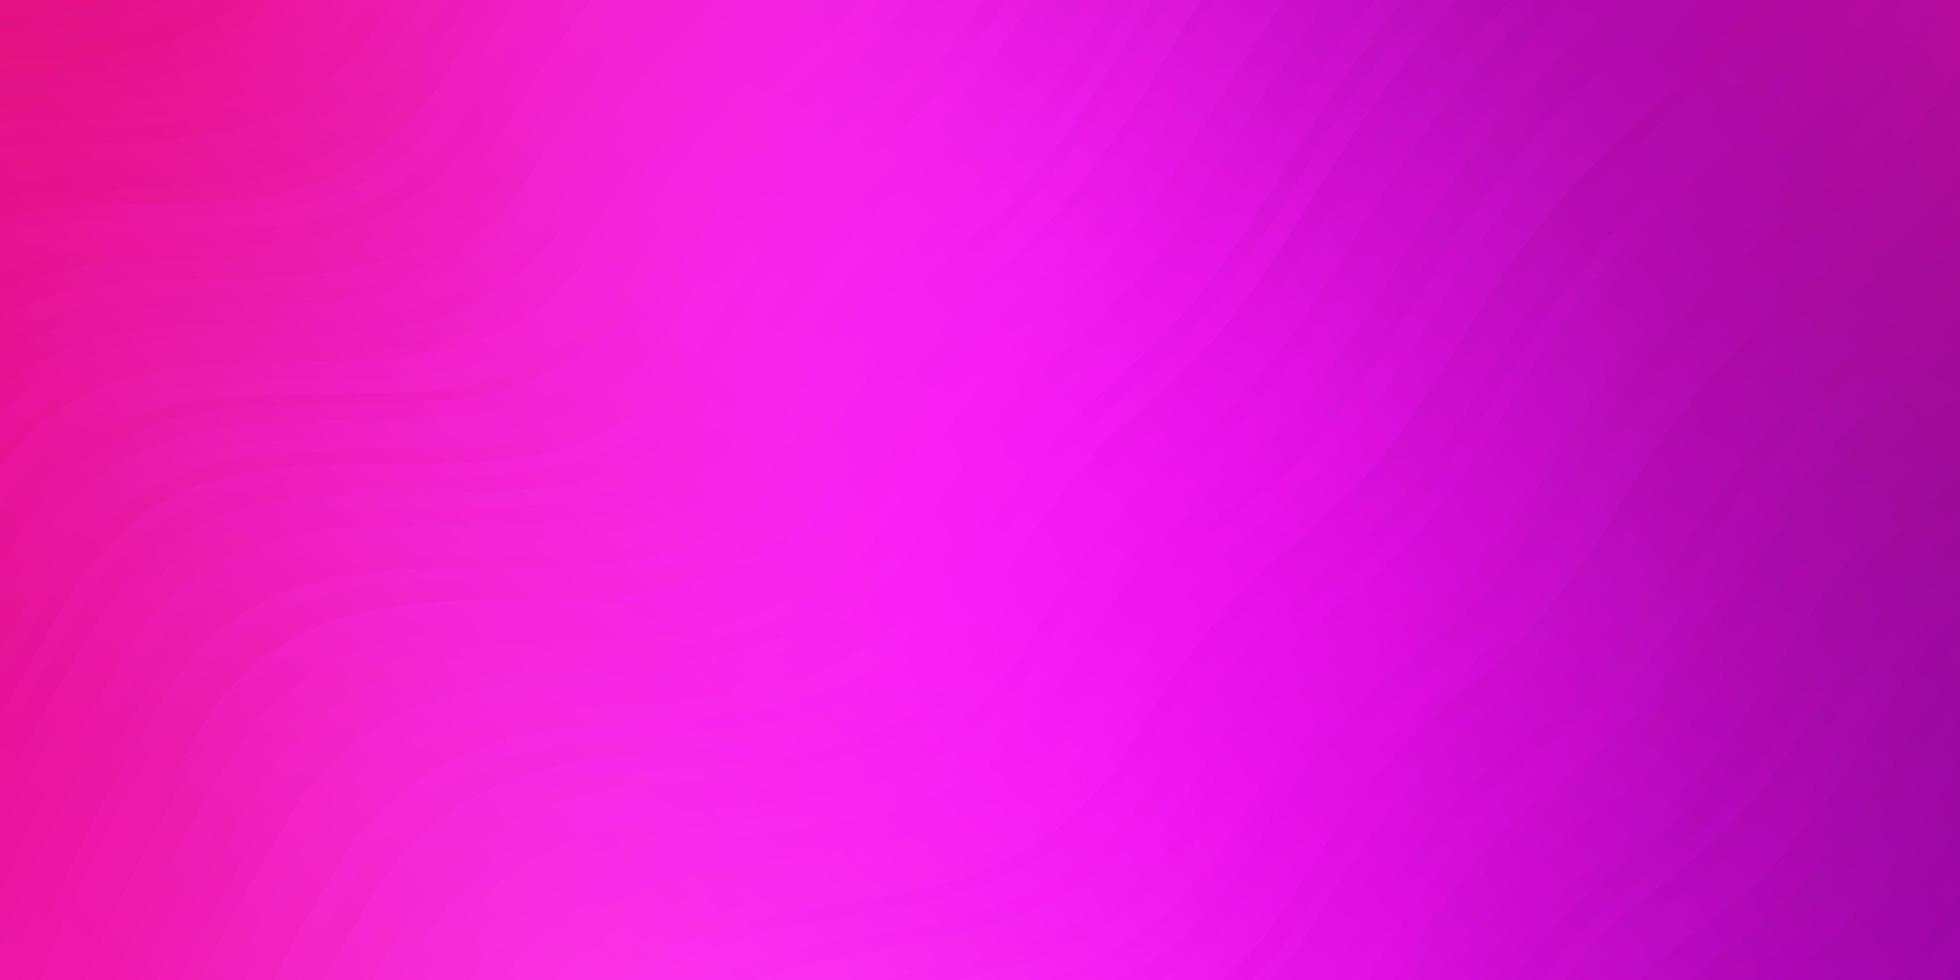 textura de vector rosa claro con líneas torcidas